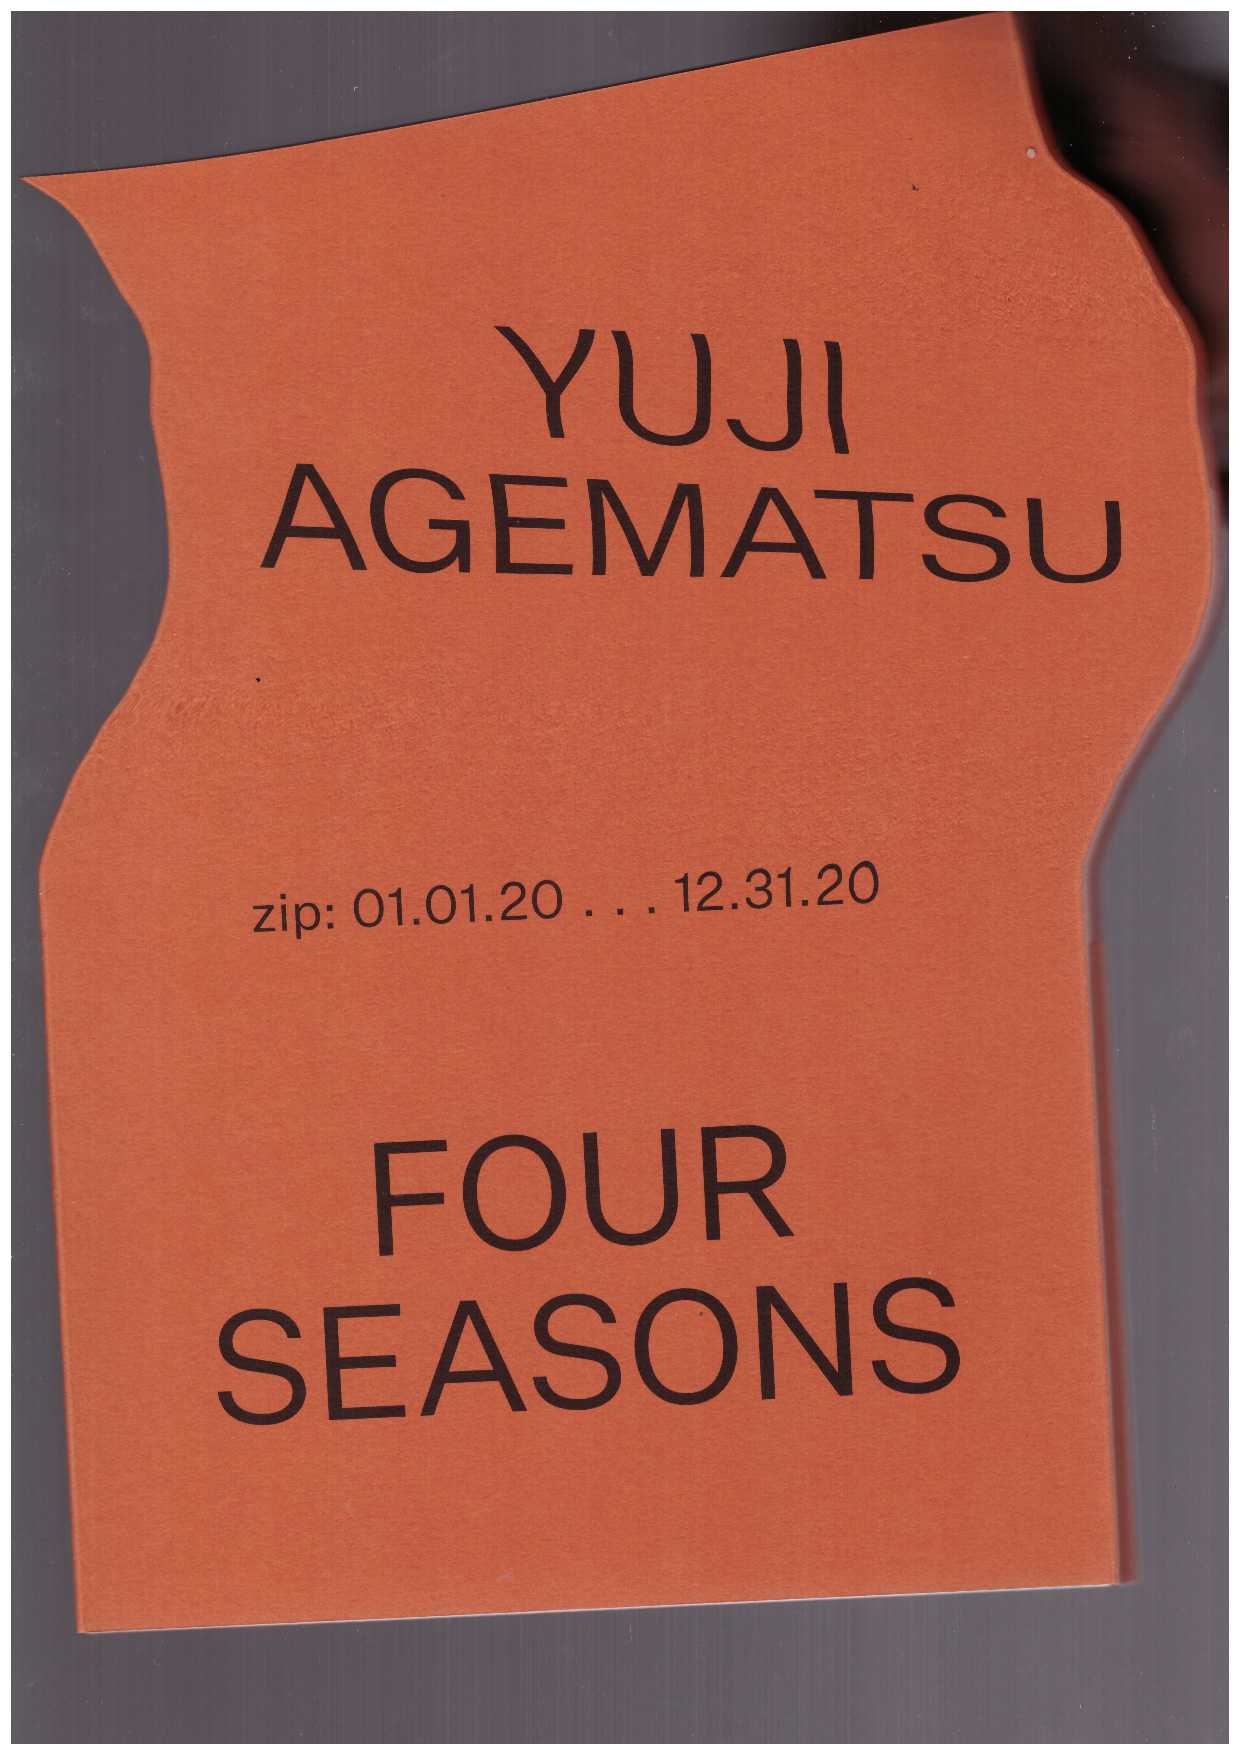 AGEMATSU, Yuji - Yuji Agematsu. Four Seasons